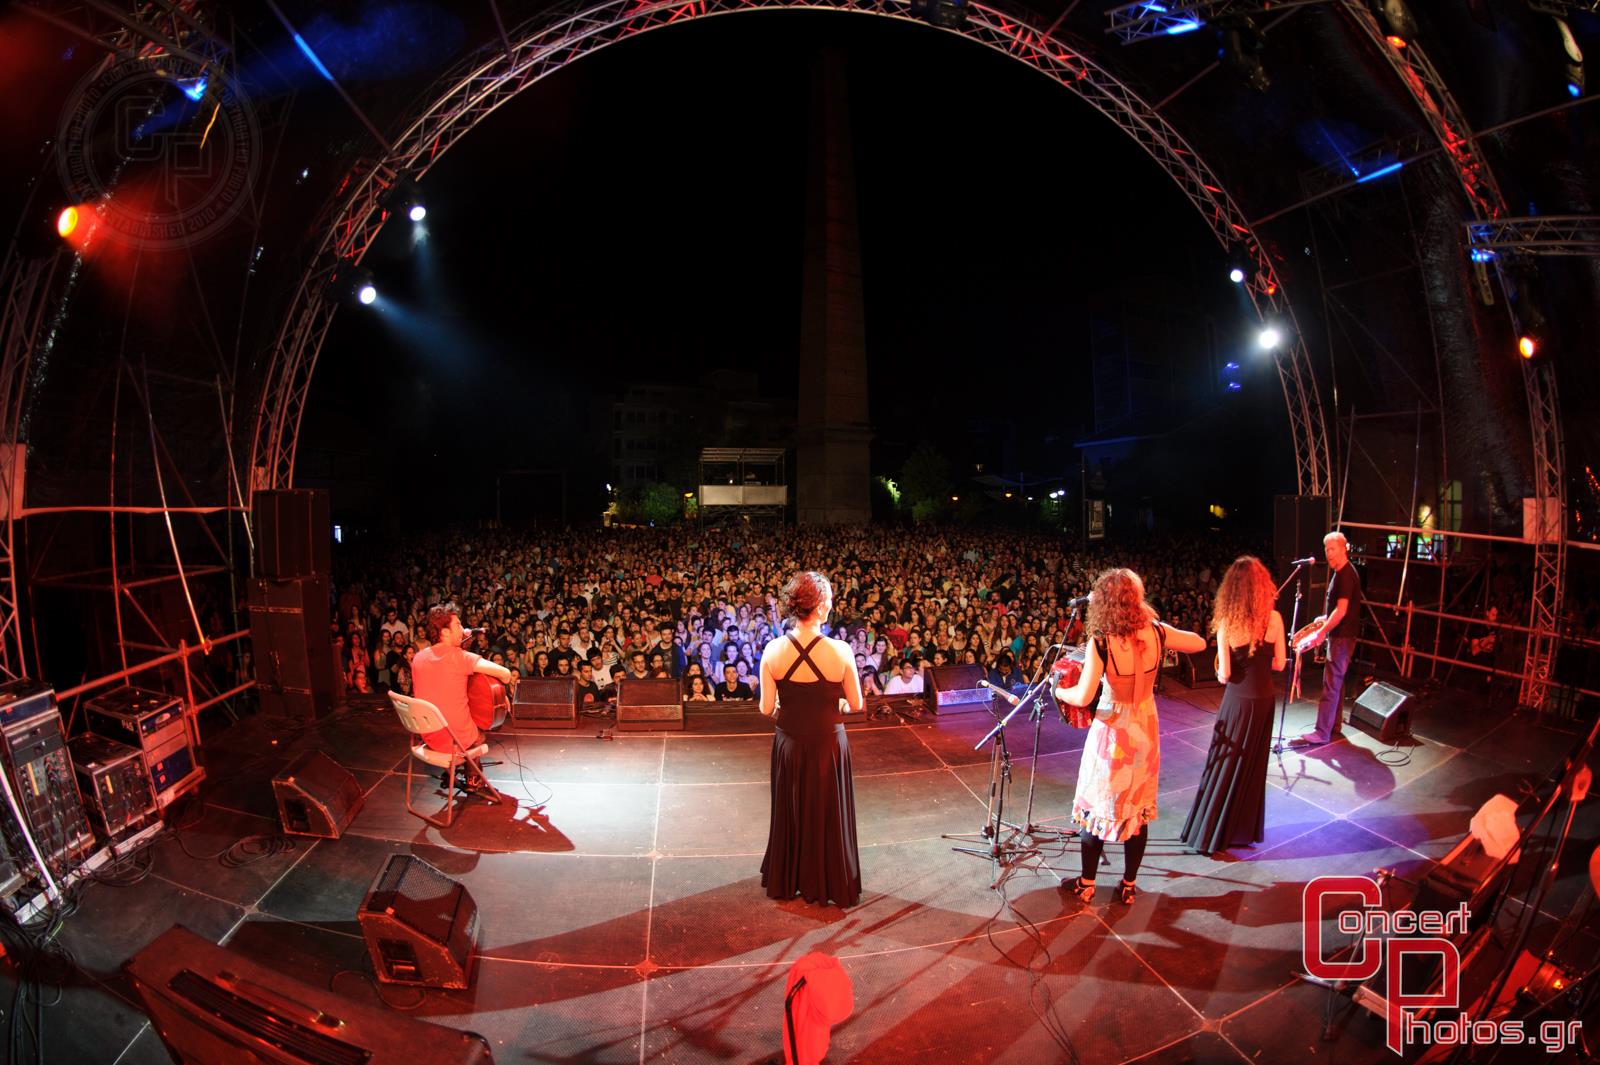 Μία συναυλία για τη Σχεδία 2014-Sxedia 2014 photographer:  - concertphotos_20140526_22_01_45